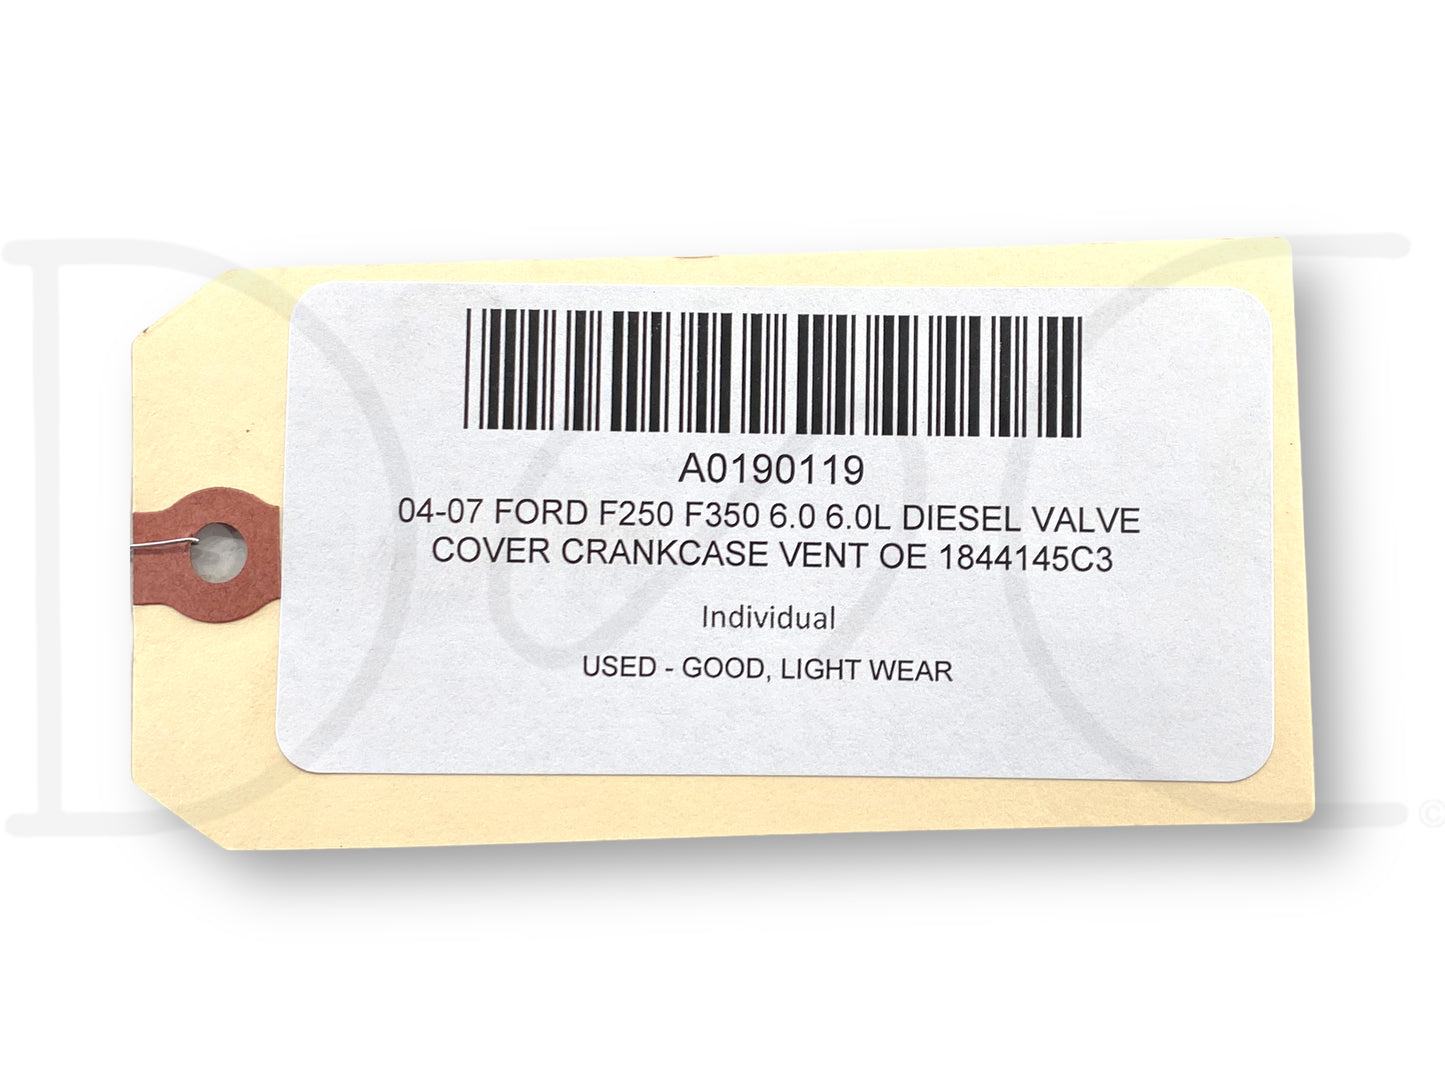 04-07 Ford F250 F350 6.0 6.0L Diesel Valve Cover Crankcase Vent OE 1844145C3